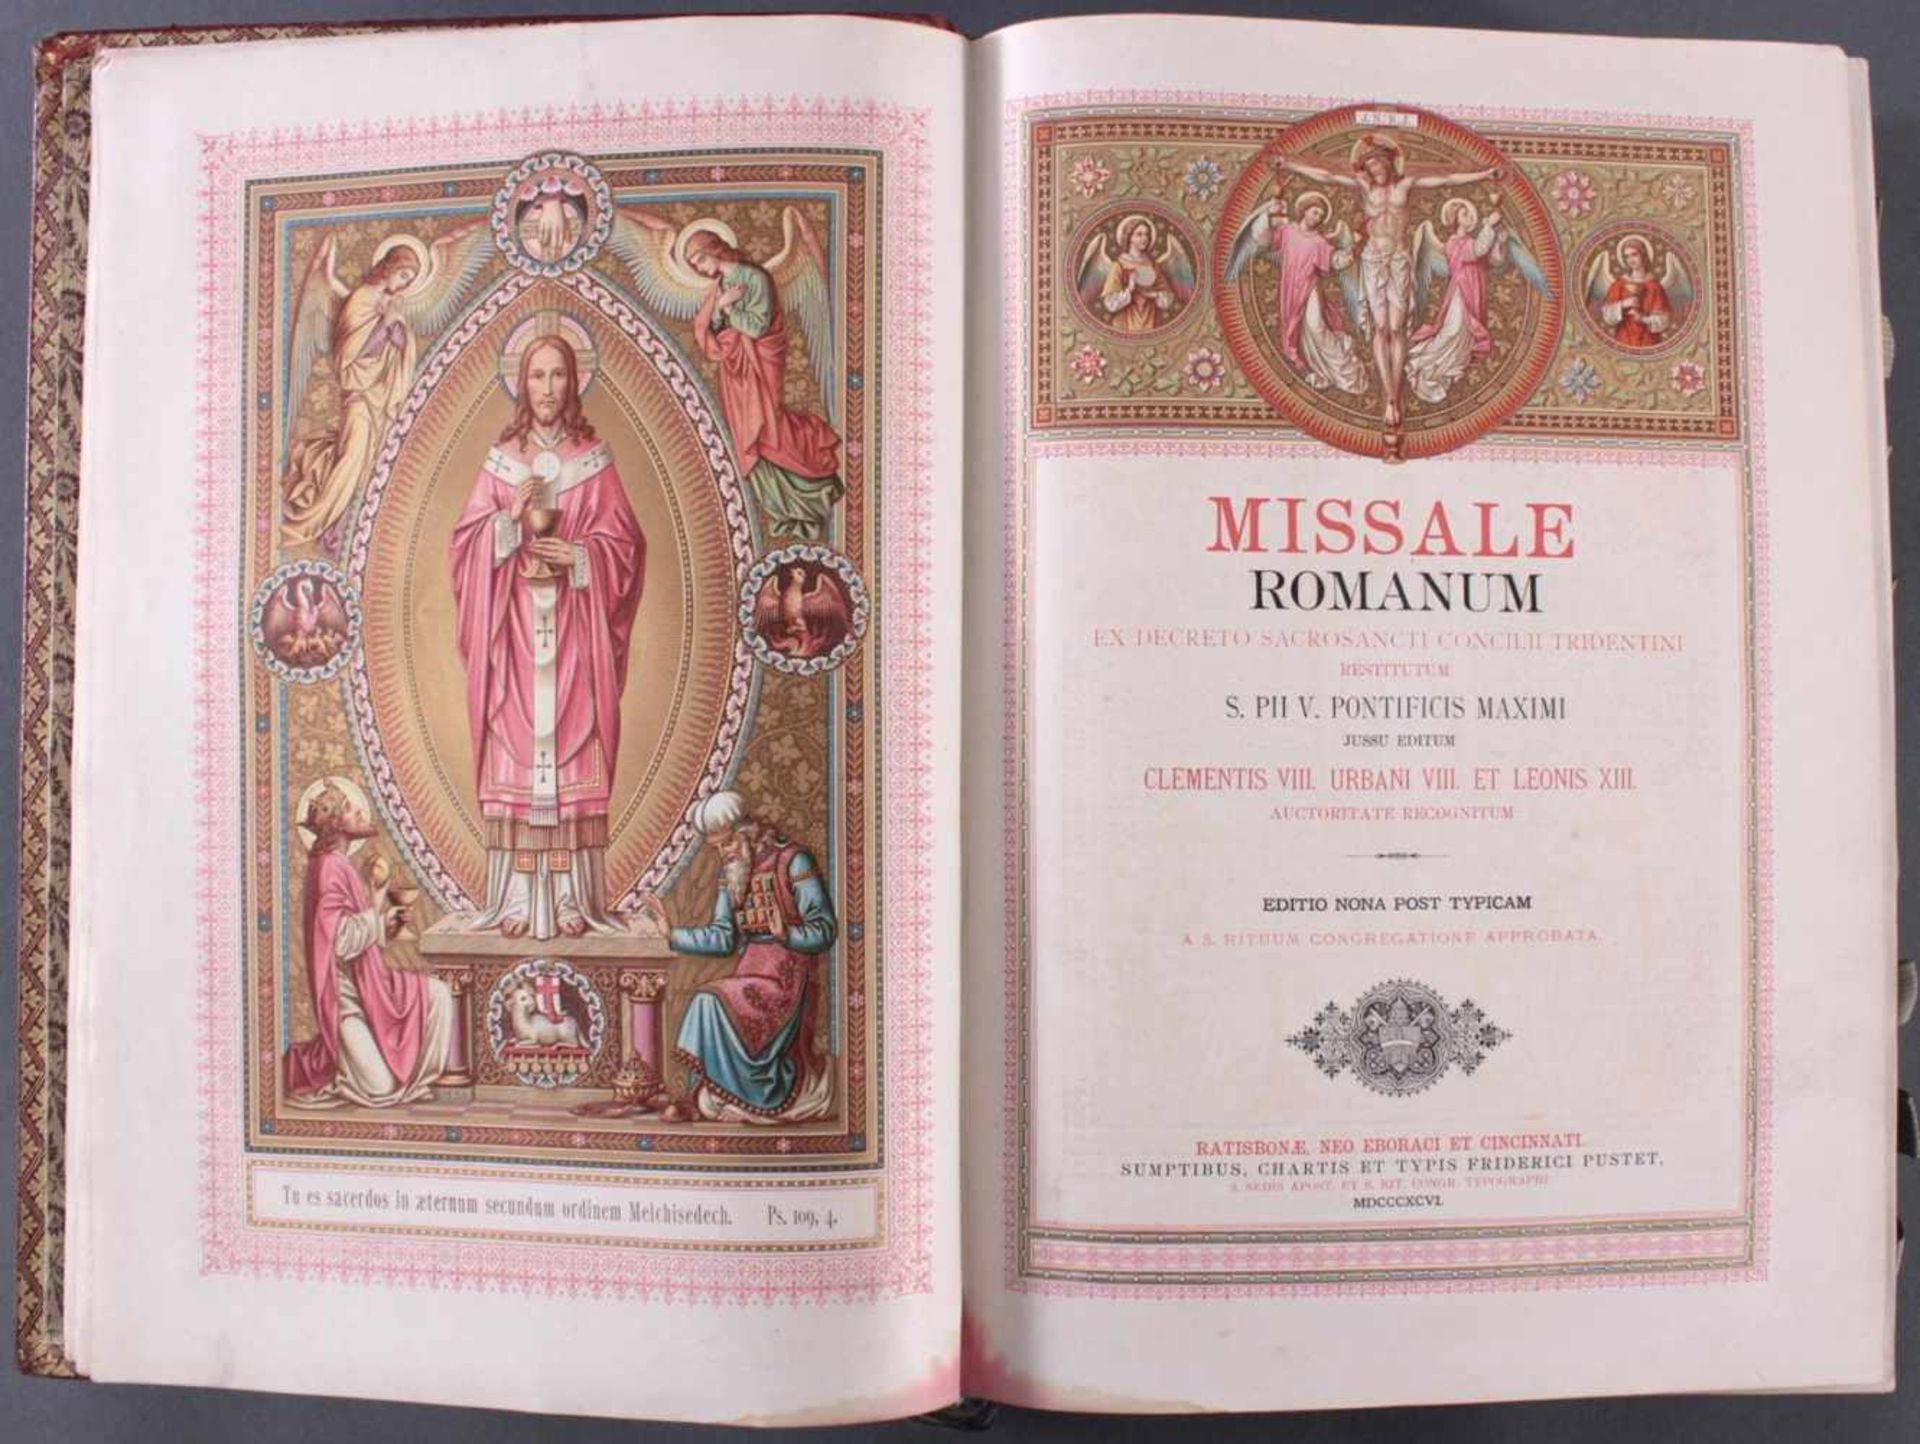 MISSALE ROMANUM 18461686 MISSALE ROMANUM ex decreto Sacrosancti Concilii Tridentini restitutum. PIUS - Image 2 of 7